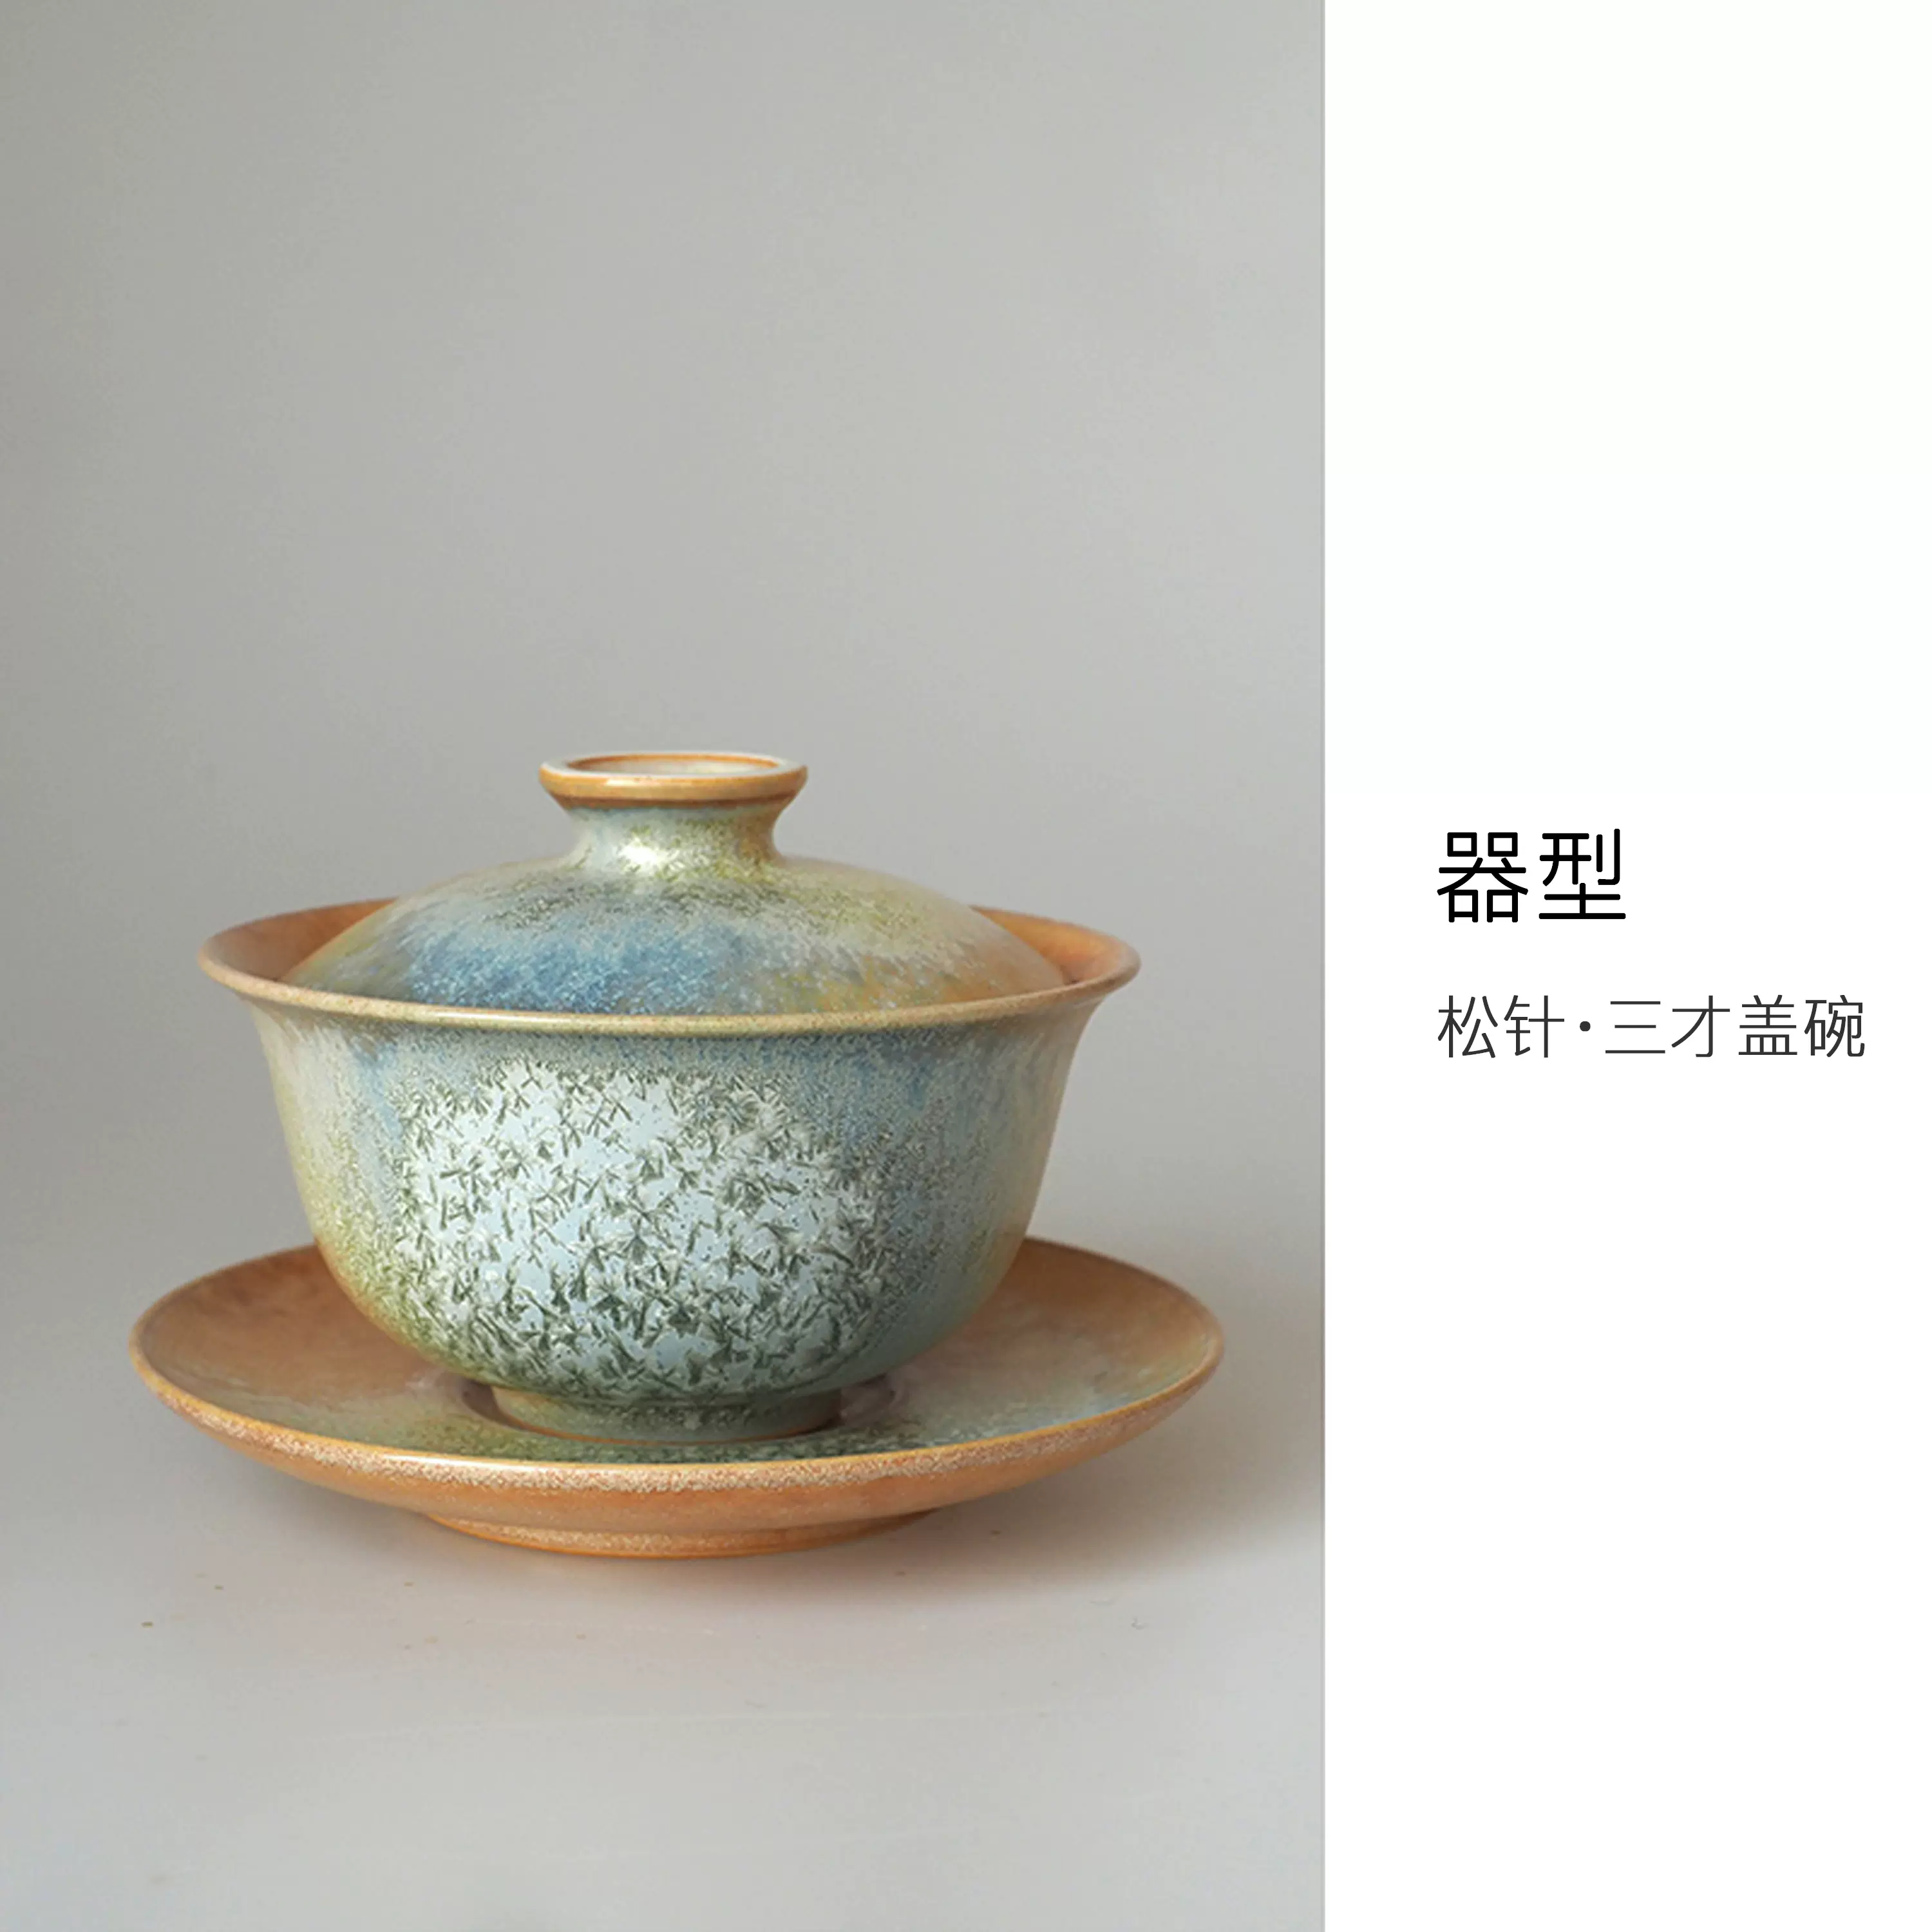 灰蓝冰飞碟盖碗景德镇手工冰裂釉开片可养二才盖碗茶具套组120ml-Taobao 